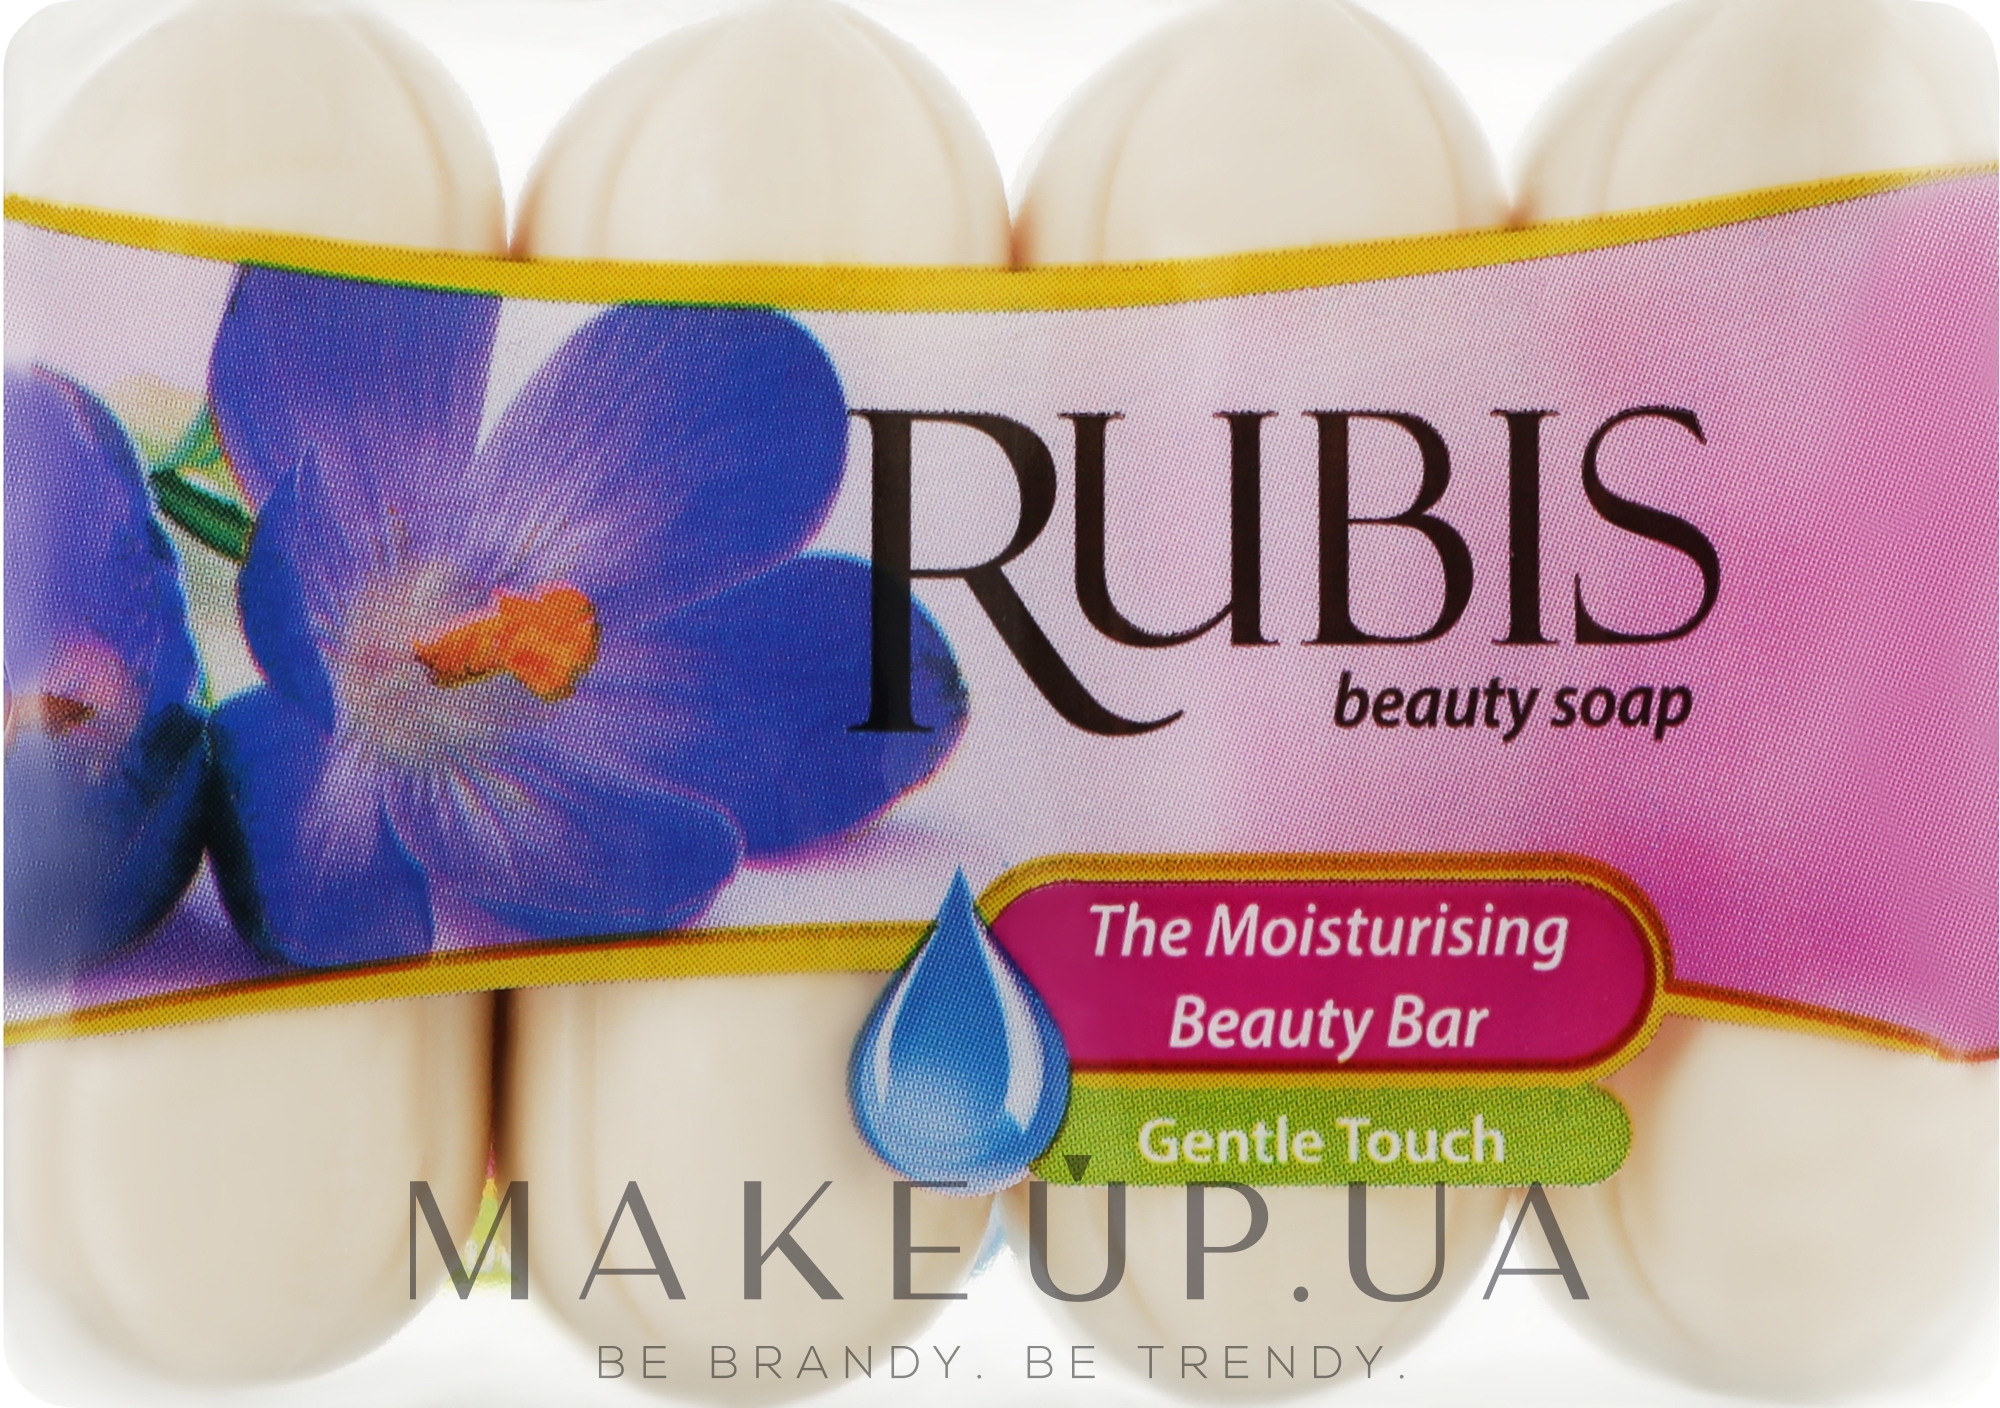 Мыло "Нежное прикосновение" в экоупаковке - Rubis Care Gentle Touch The Moisturising Beauty Bar — фото 4x50g